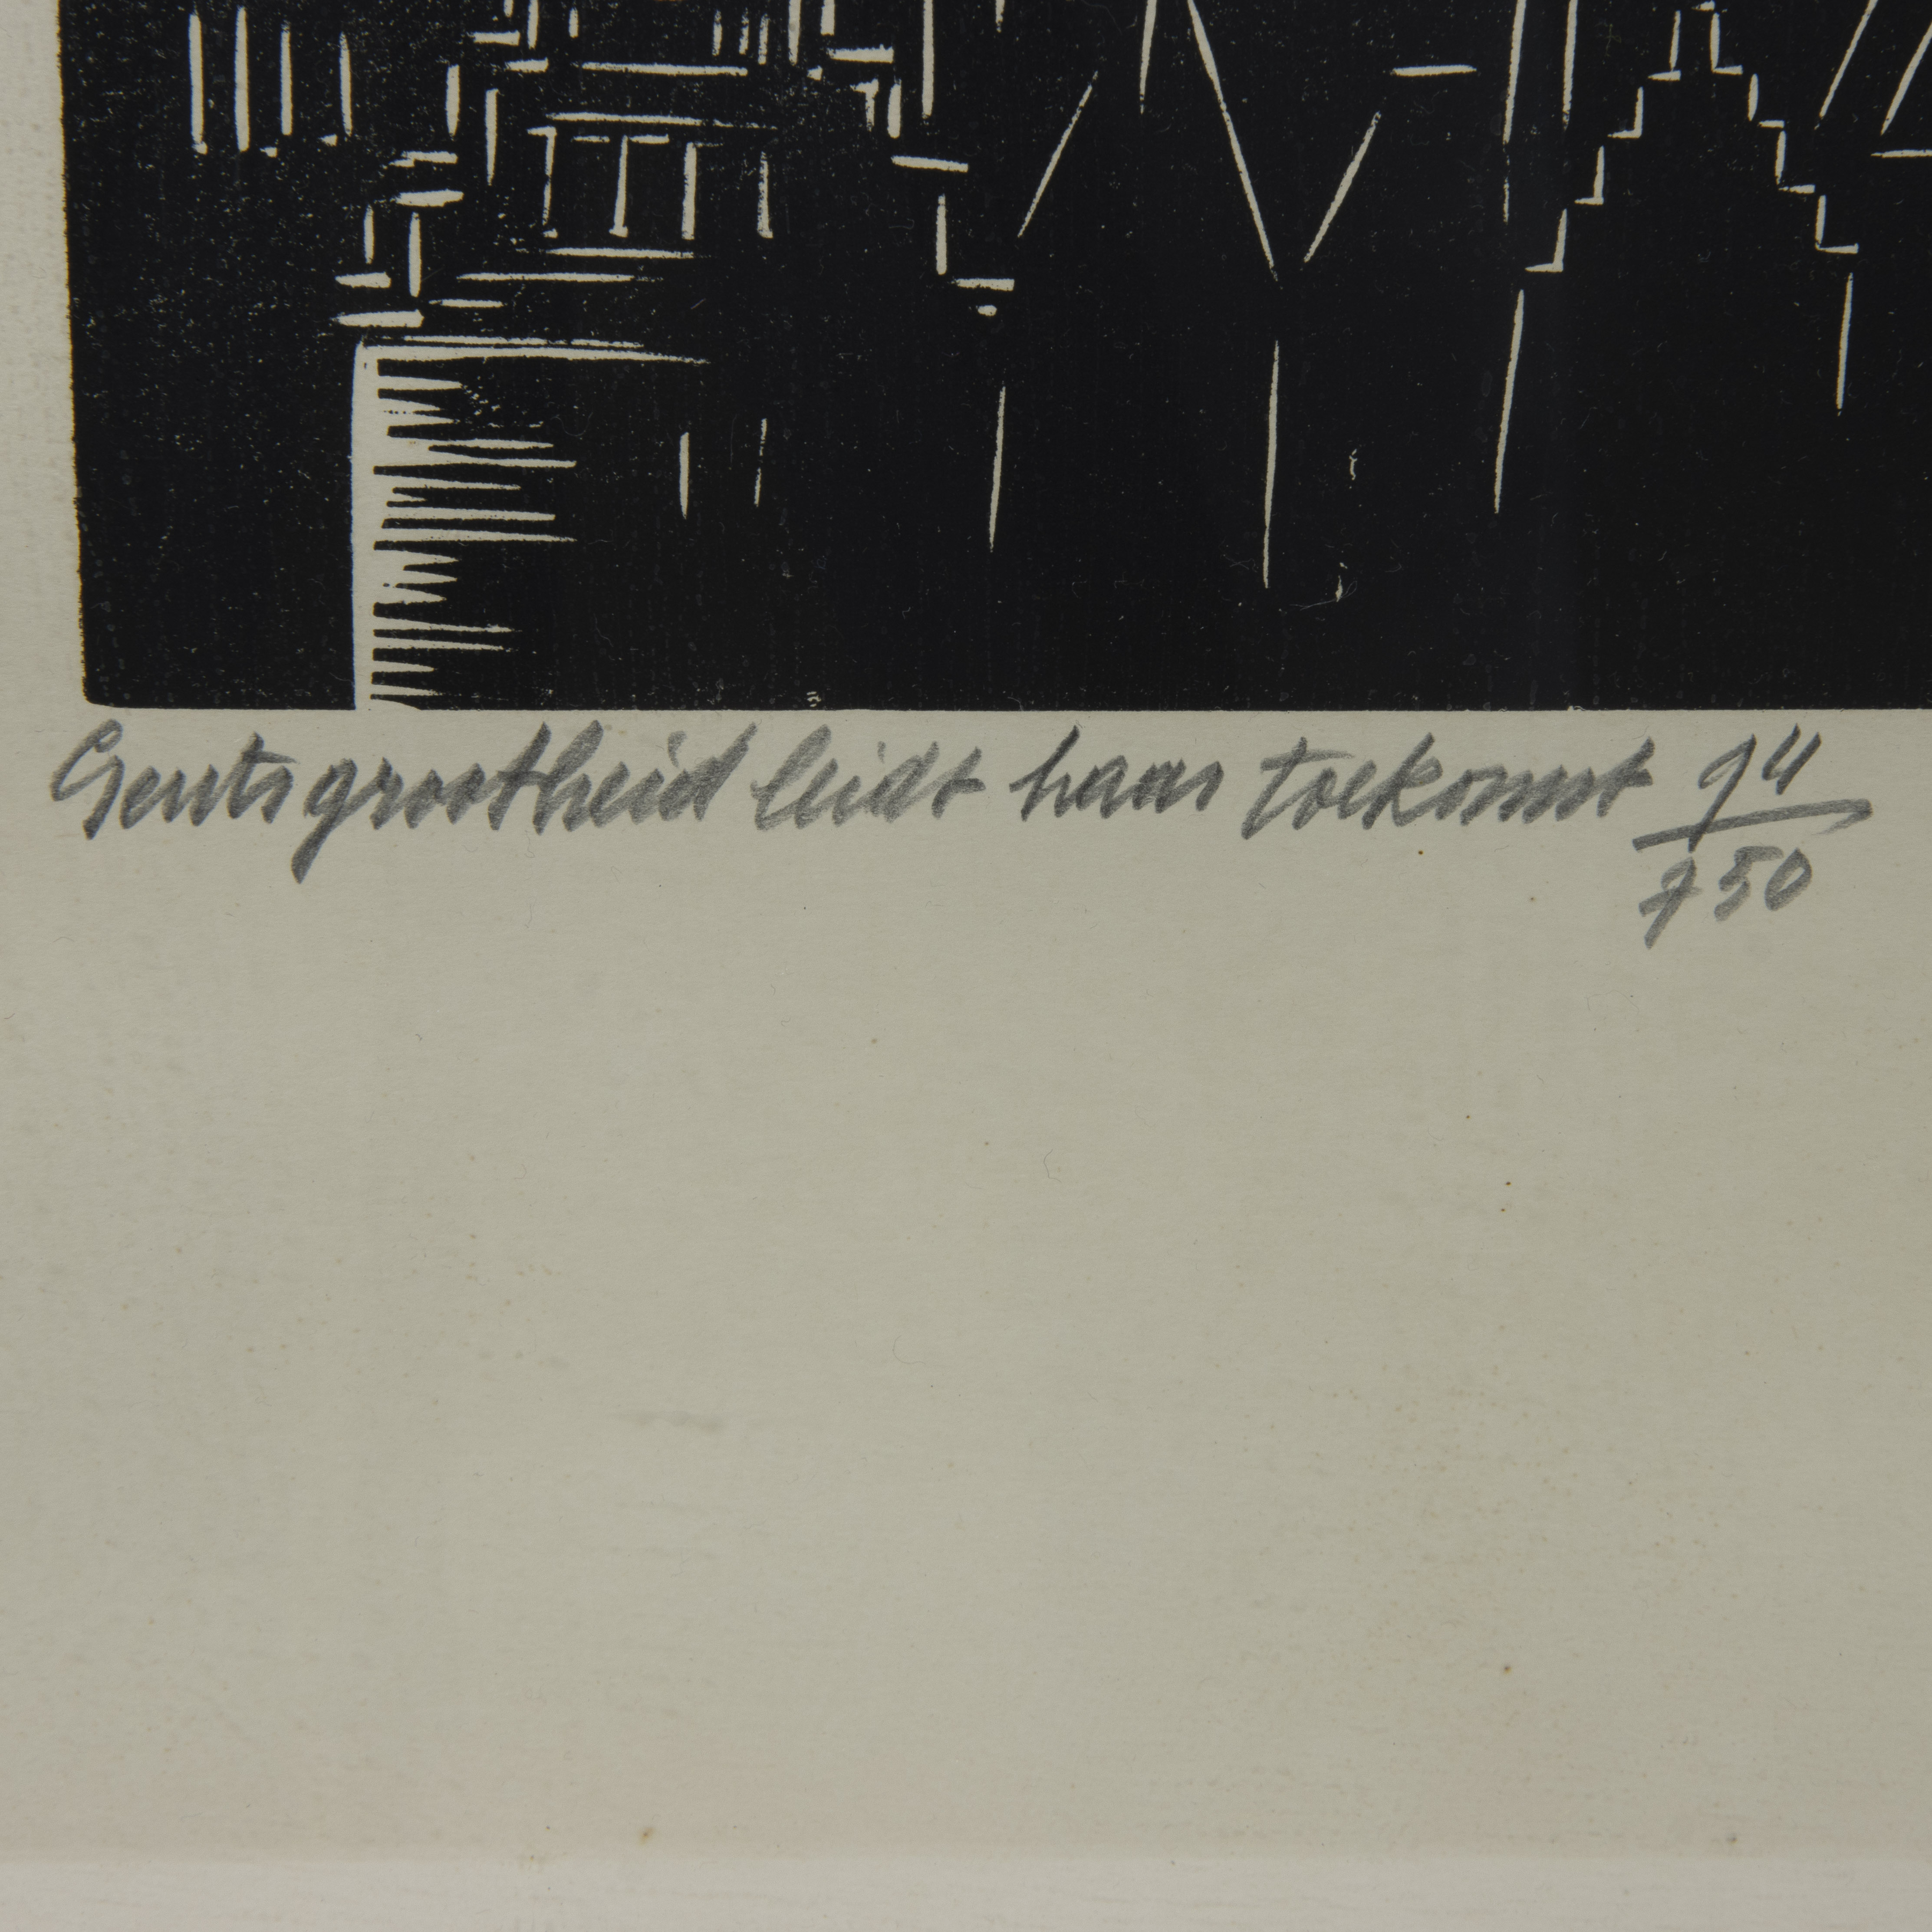 Frans MASEREEL (1889-1972), woodcut 'Gents grootheid leidt haar toekomst', numbered 97/750, signed a - Image 4 of 4